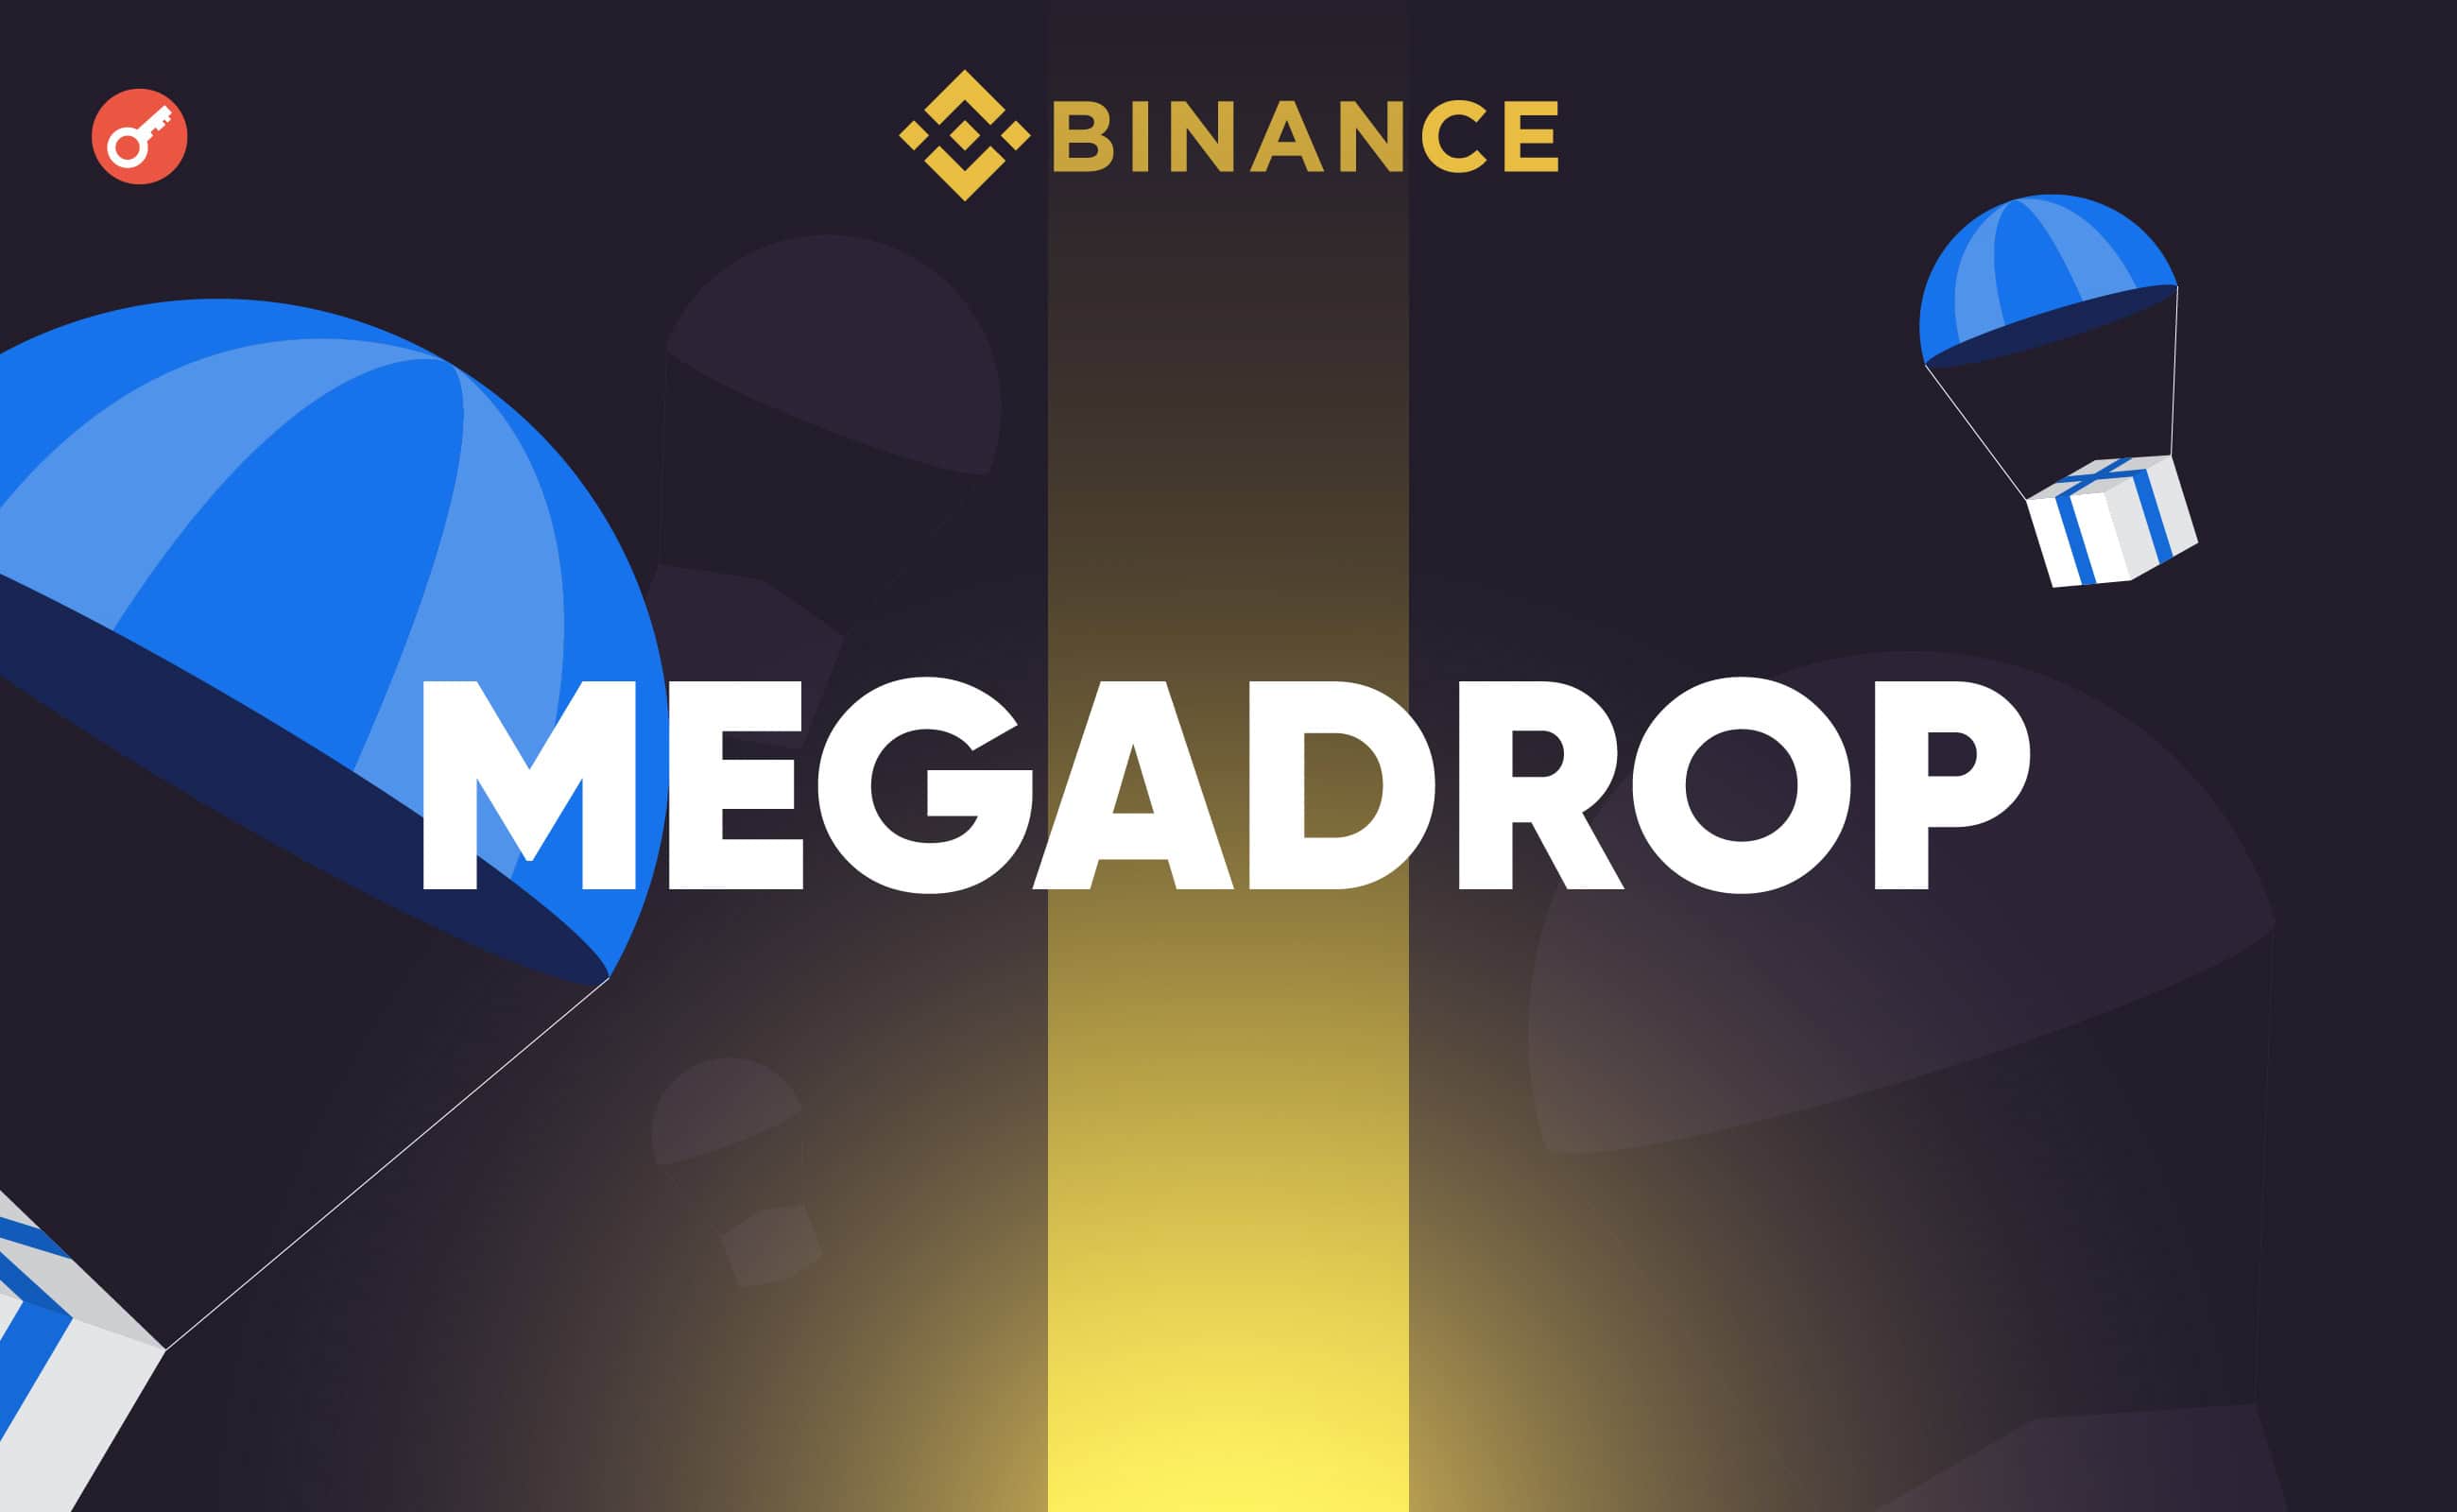 Binance запустила платформу Megadrop для аірдропів і Web3-квестів. Головний колаж новини.